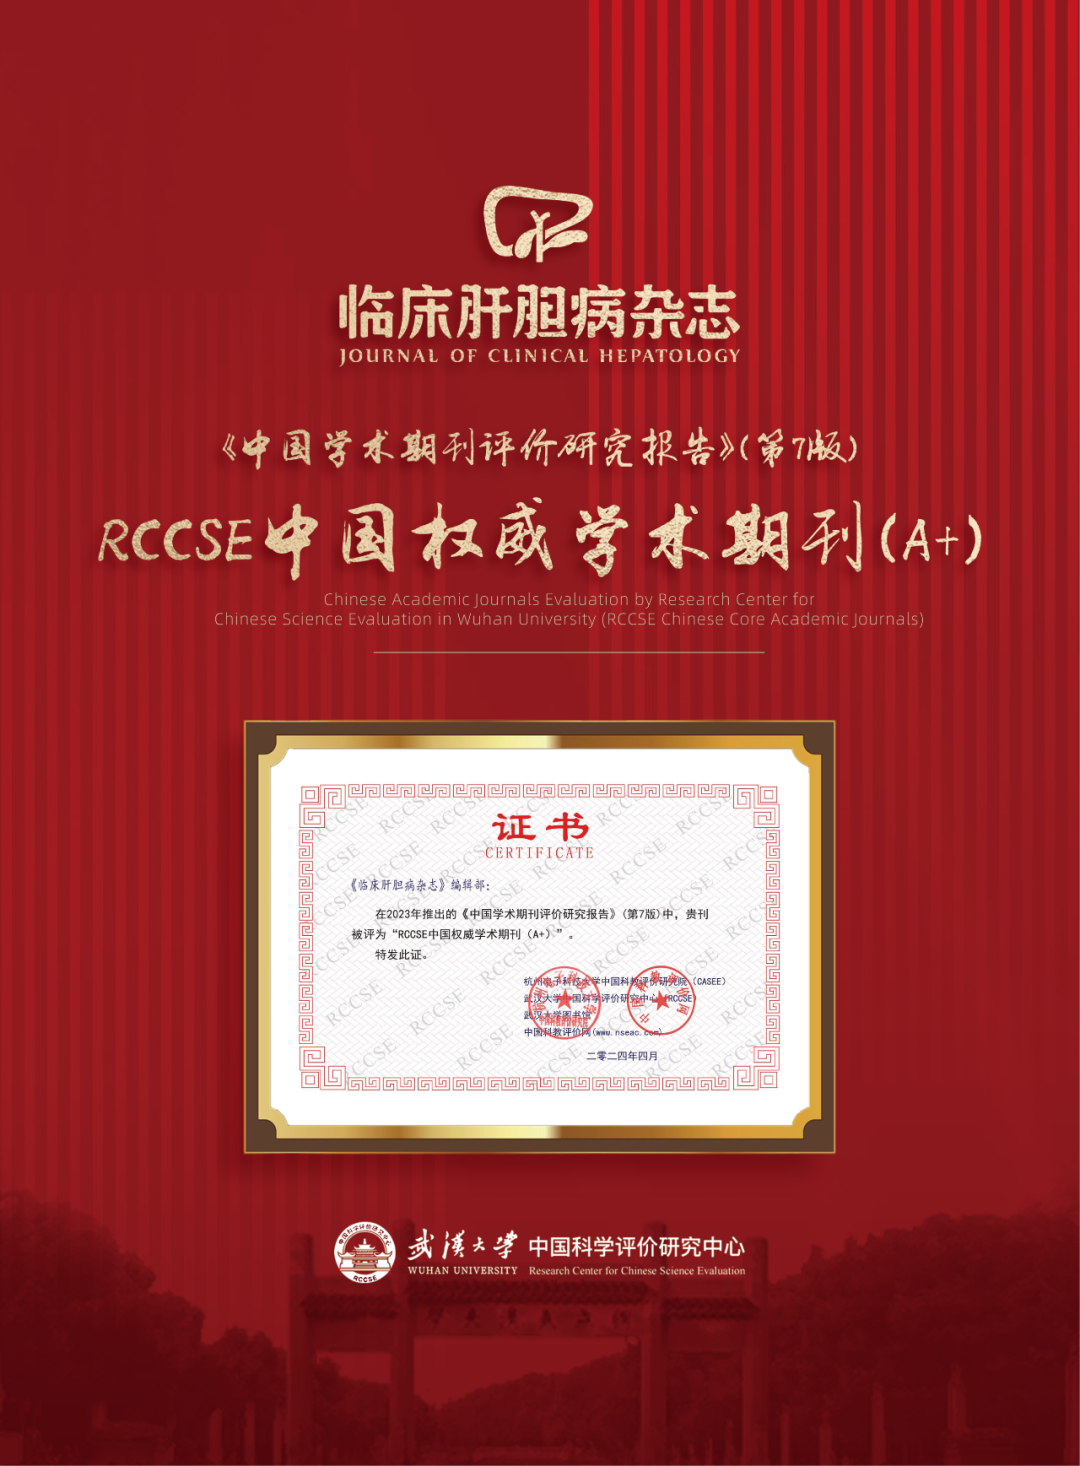 喜报！《临床肝胆病杂志》获评“RCCSE中国权威学术期刊（A+）”